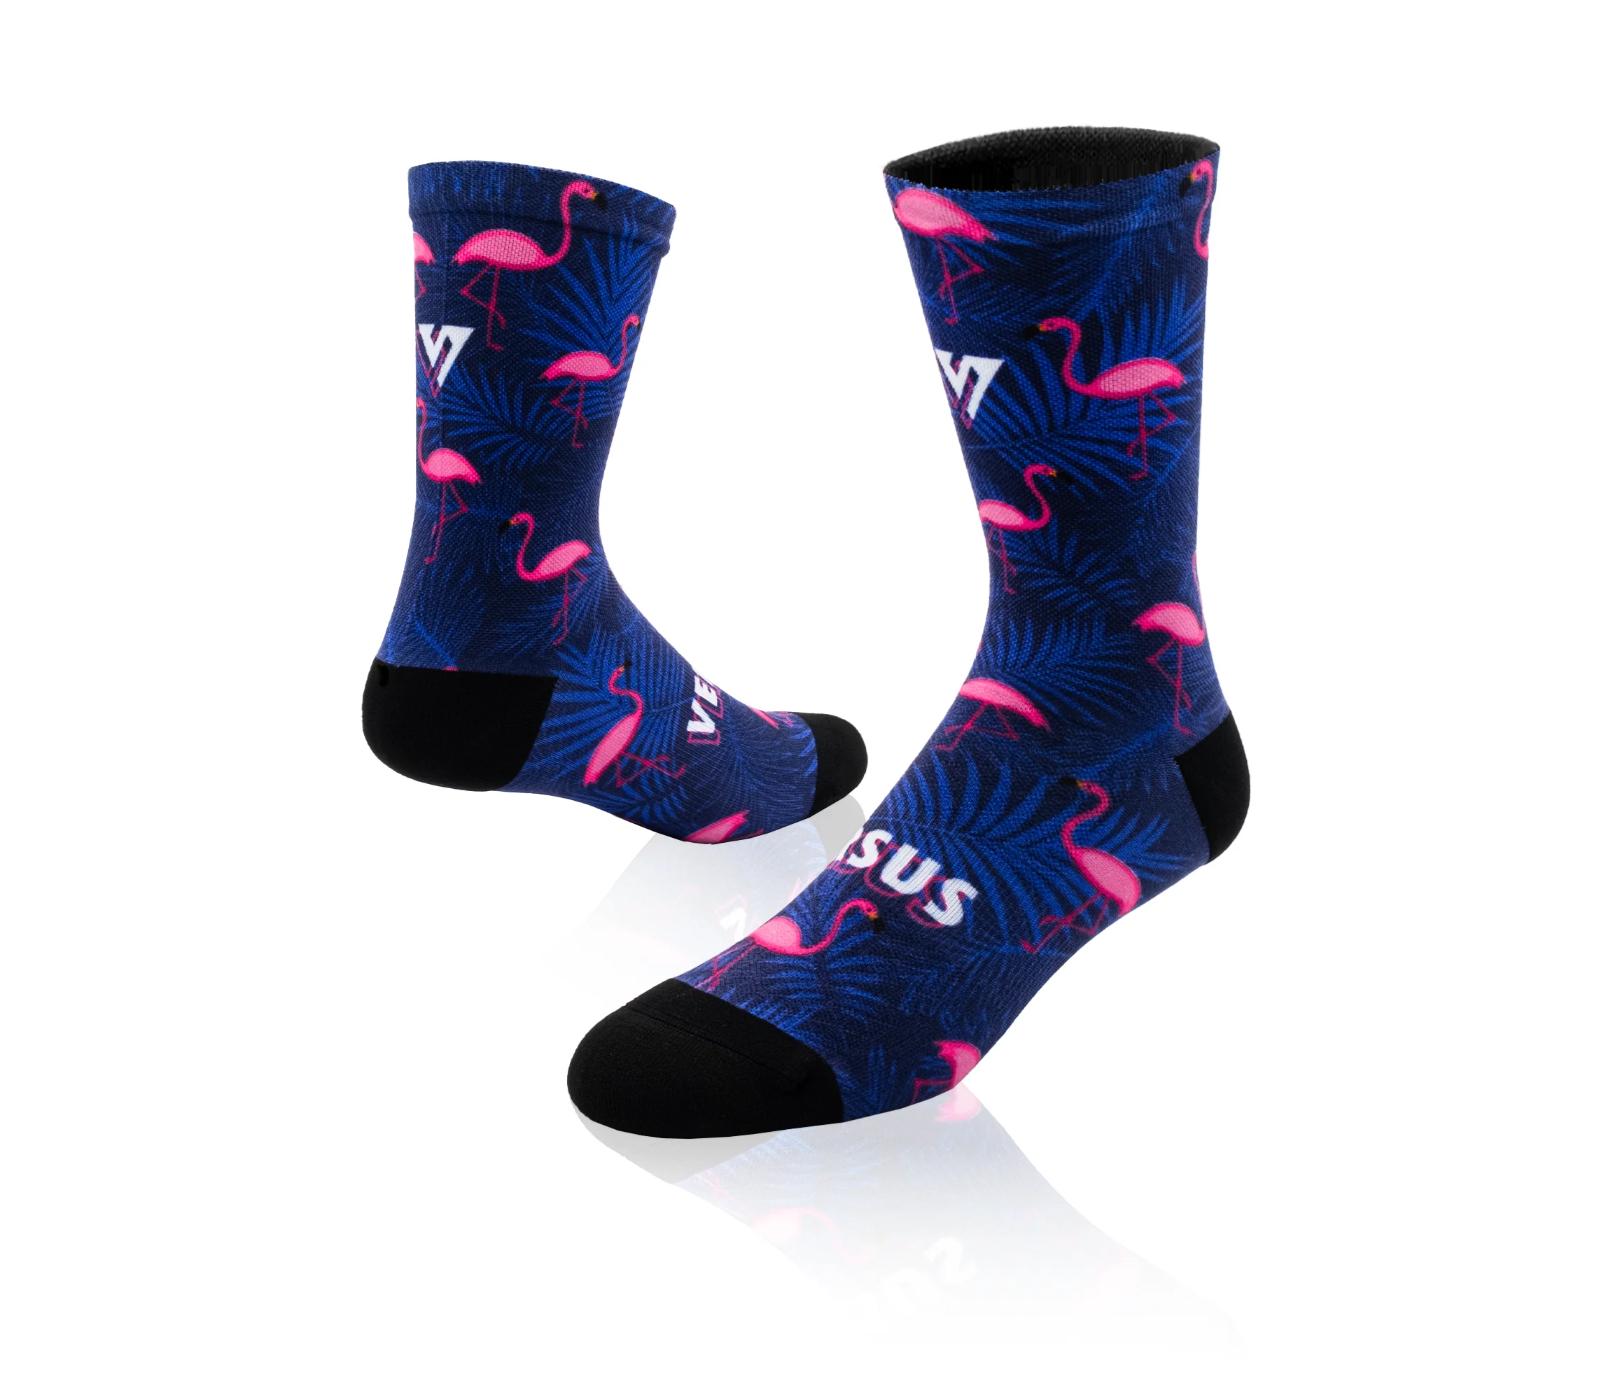 Versus Elite Flamingo Ladies Socks